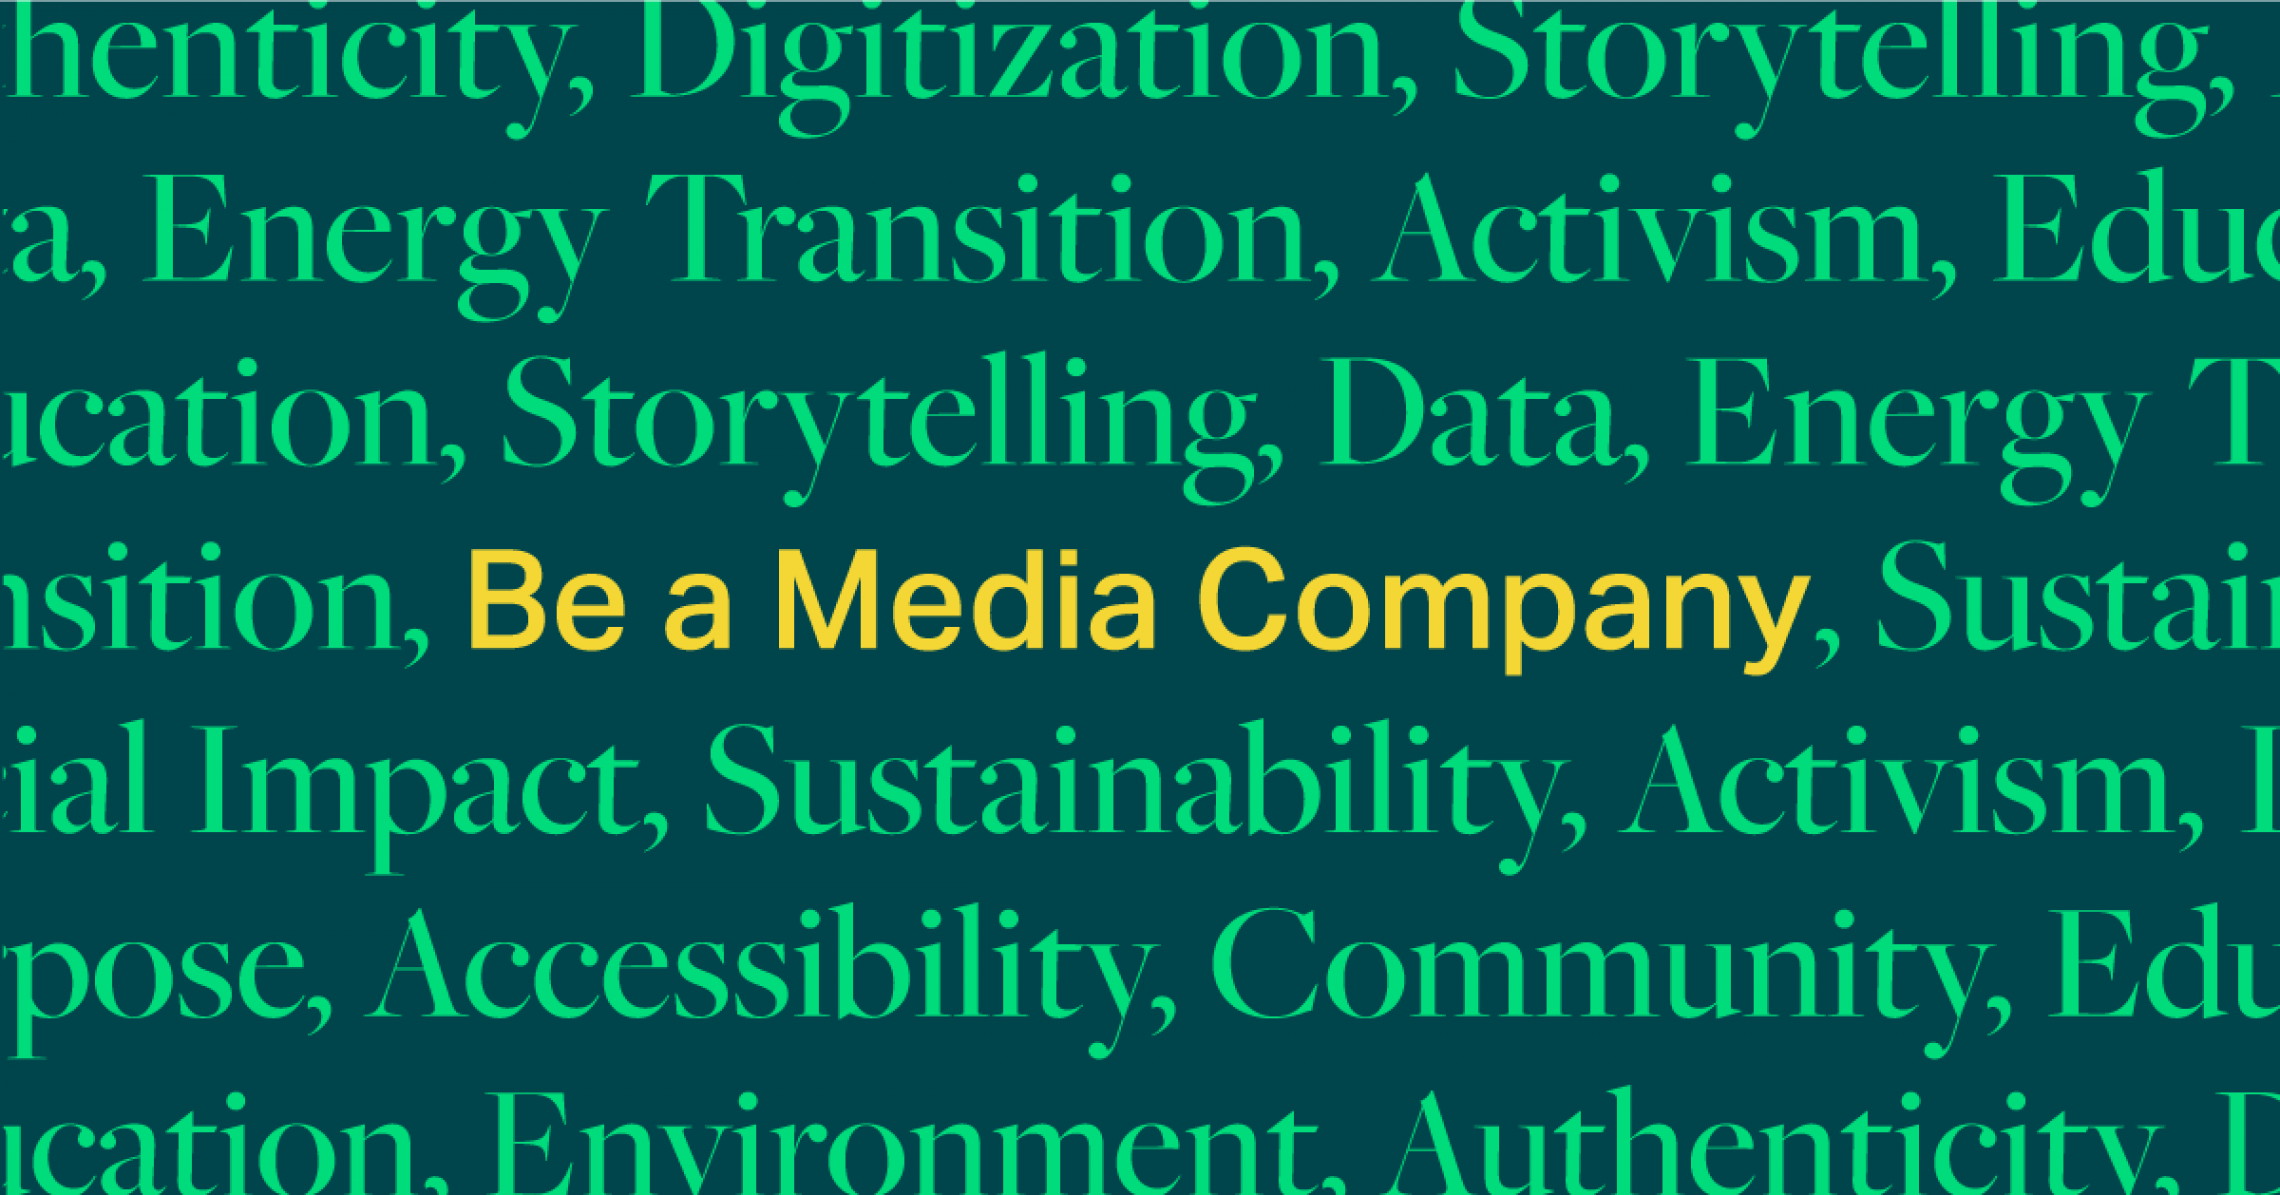 Be a media company